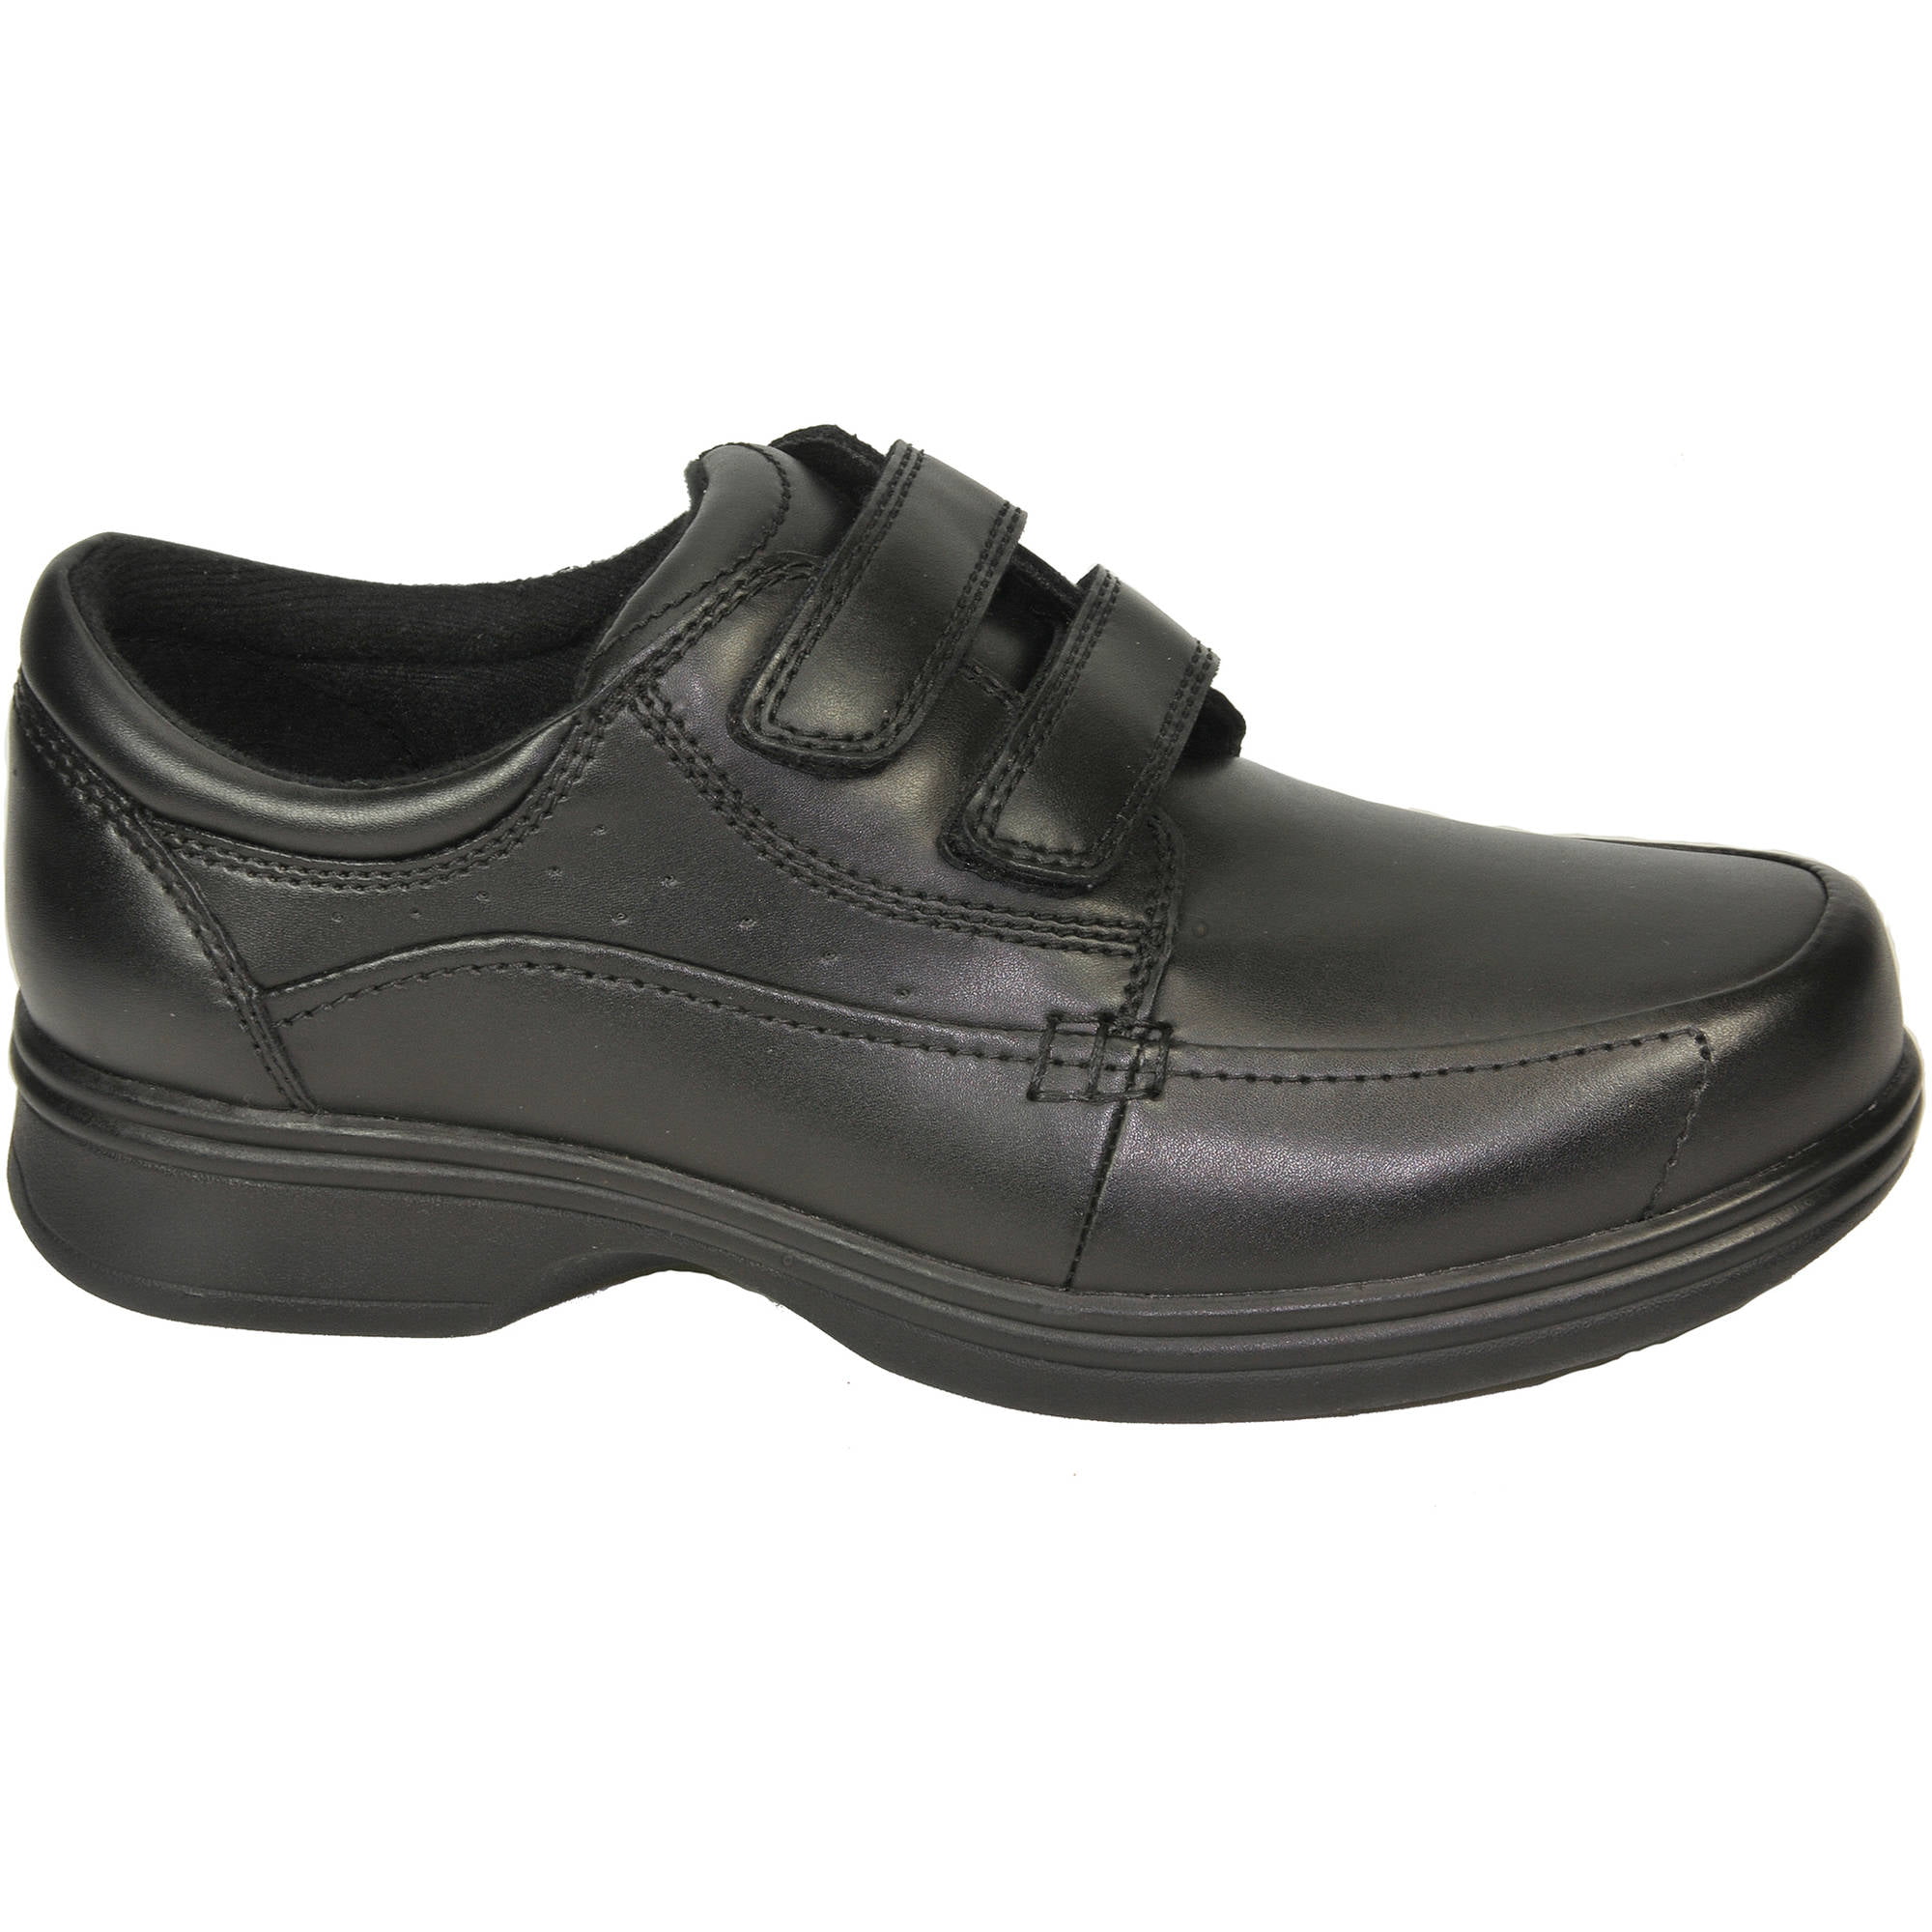 Shoes - Dr. Scholl's Men's Michael Shoe 